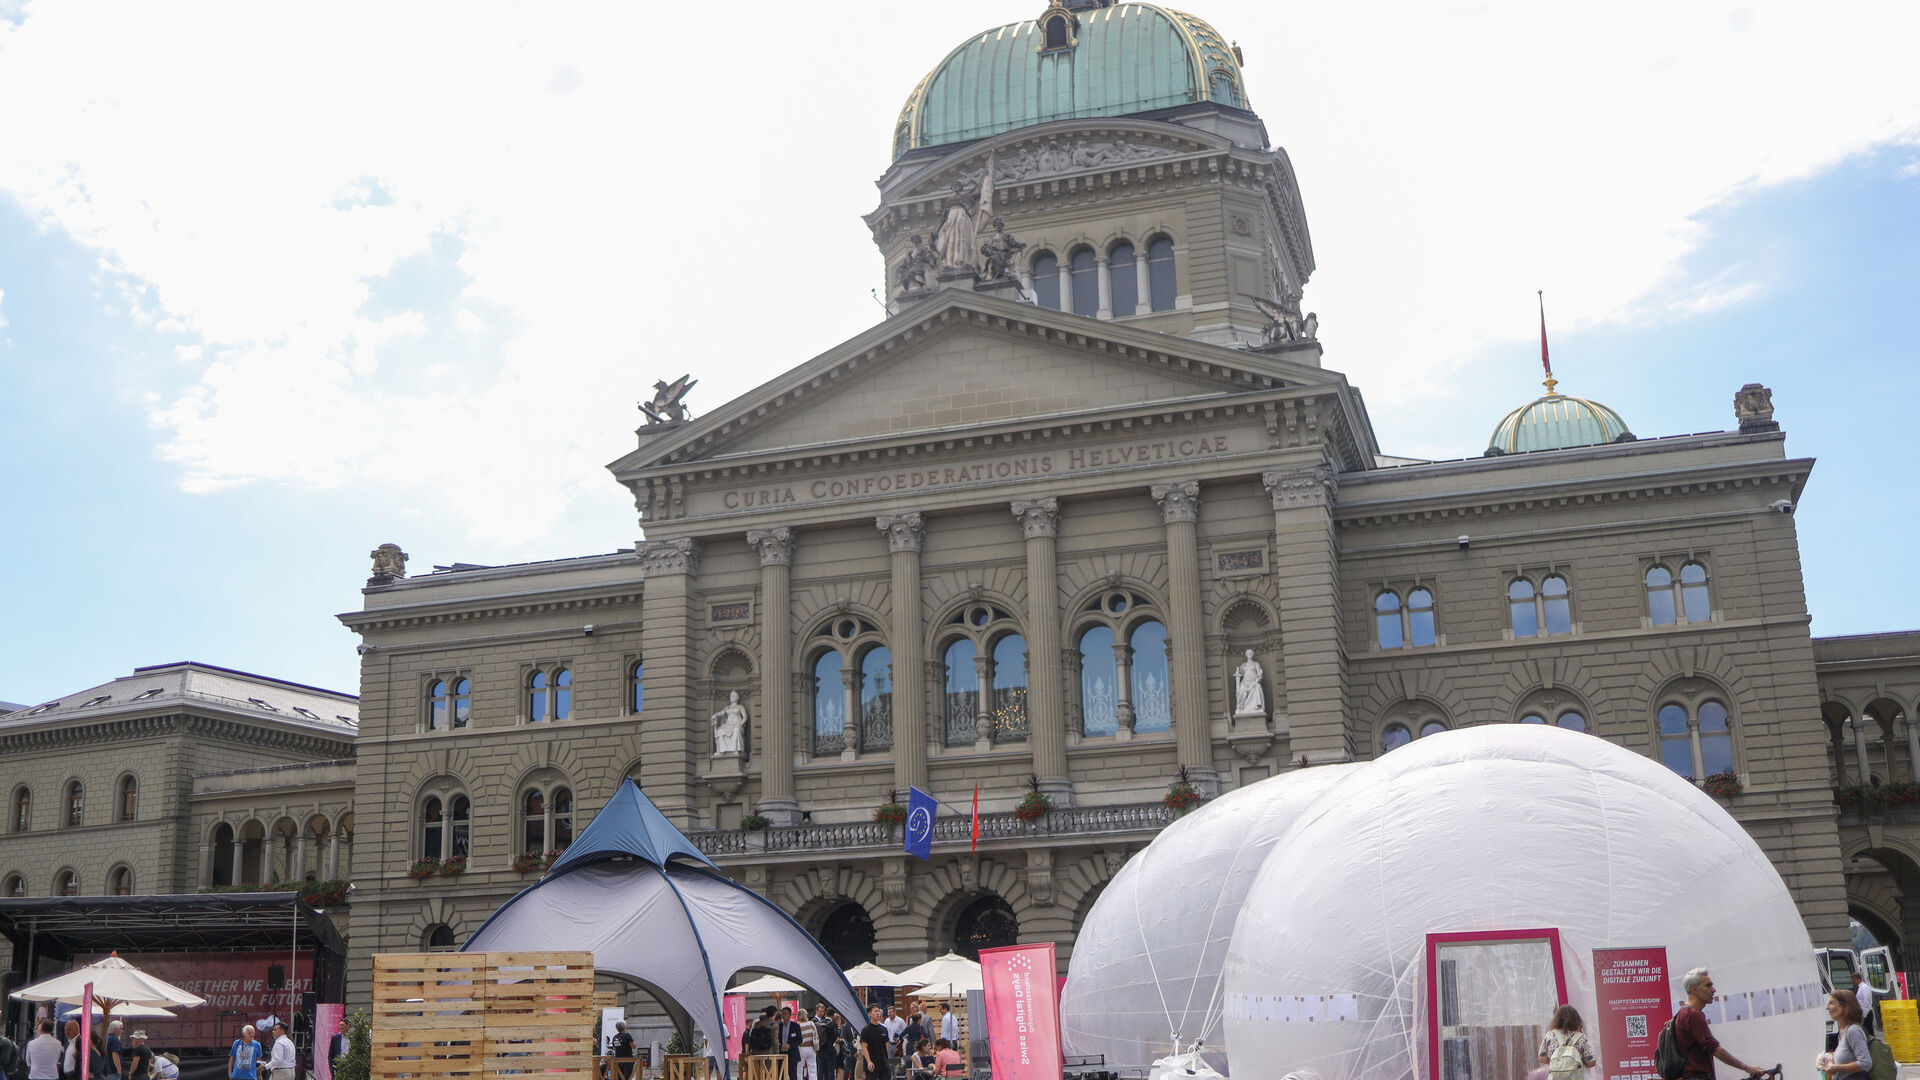 'Digital Swiss Days' 2022 blev indviet i Bern den 5. september